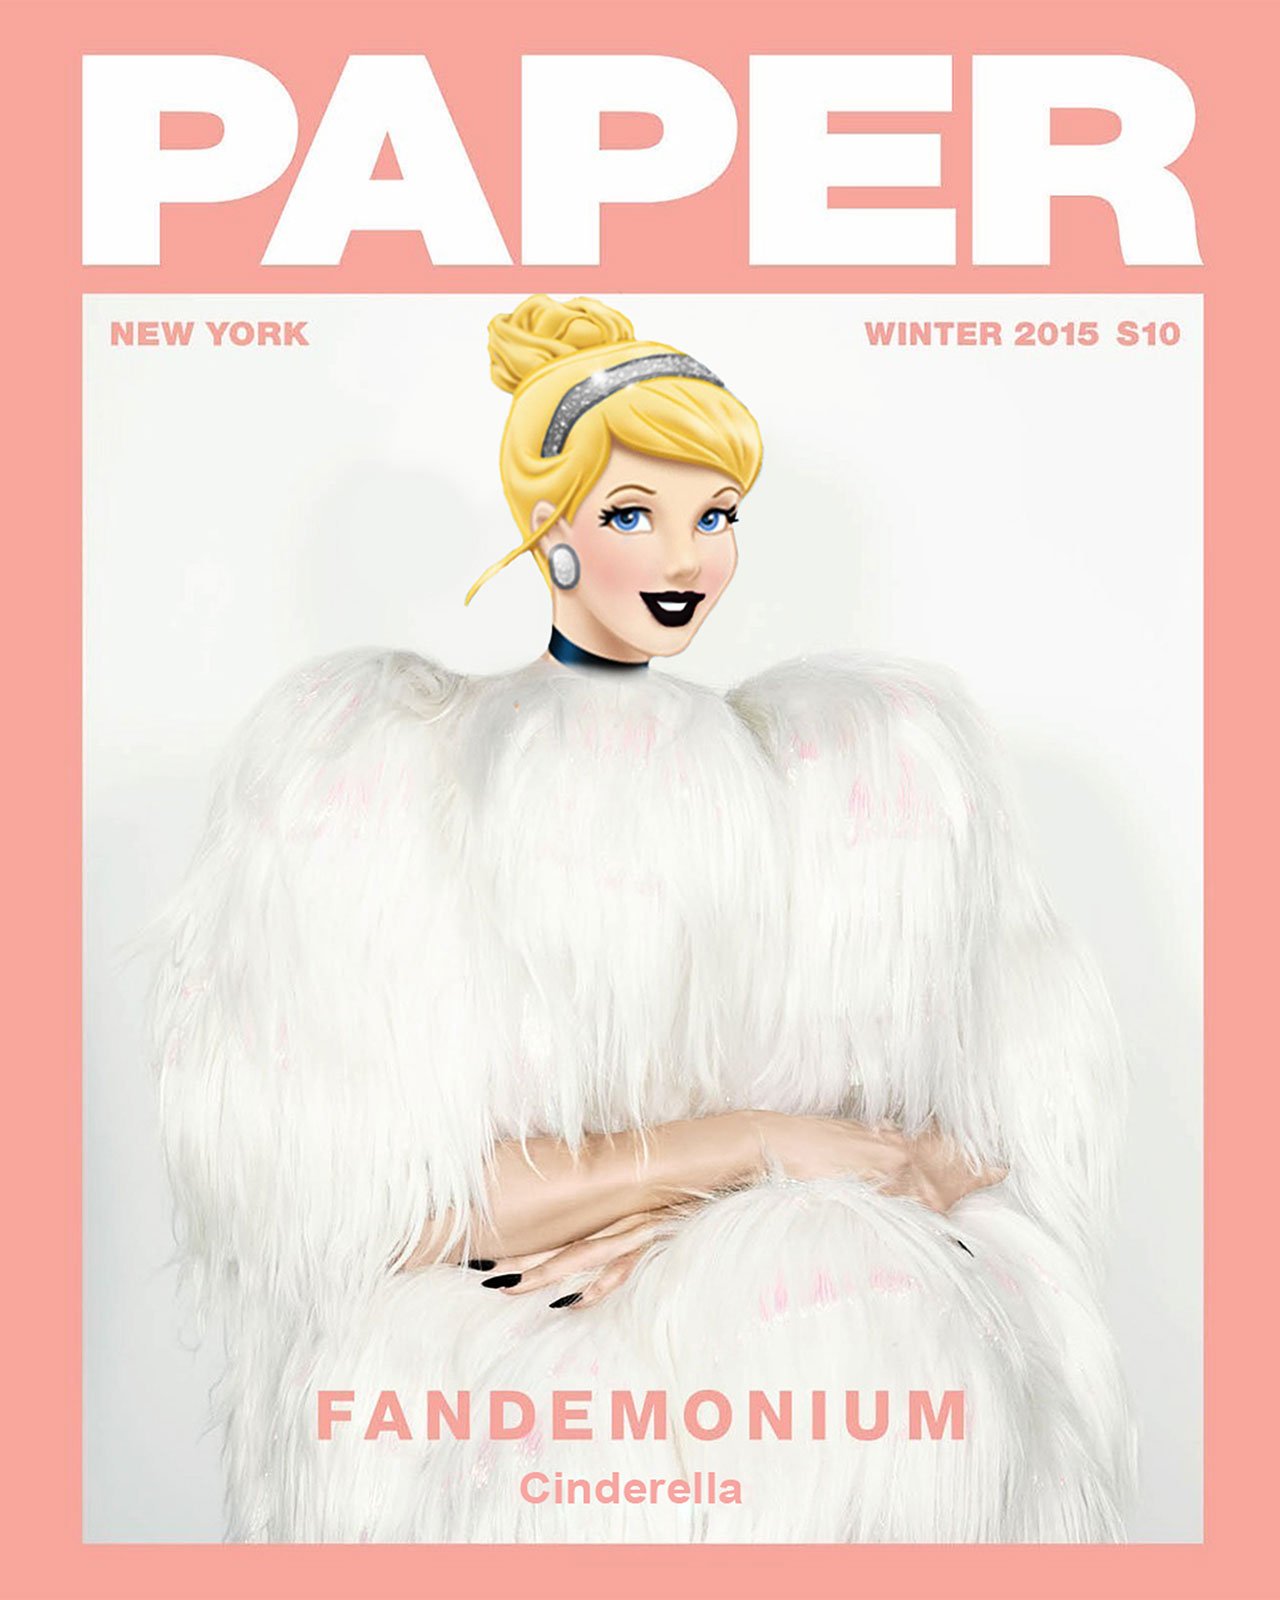 帕丽斯·希尔顿 (Paris Hilton) 在《纸》杂志的 Fandemonium 封面中饰演灰姑娘。 由 Vijat Mohindra 拍摄，照片由 Gregory Masouras 编辑。